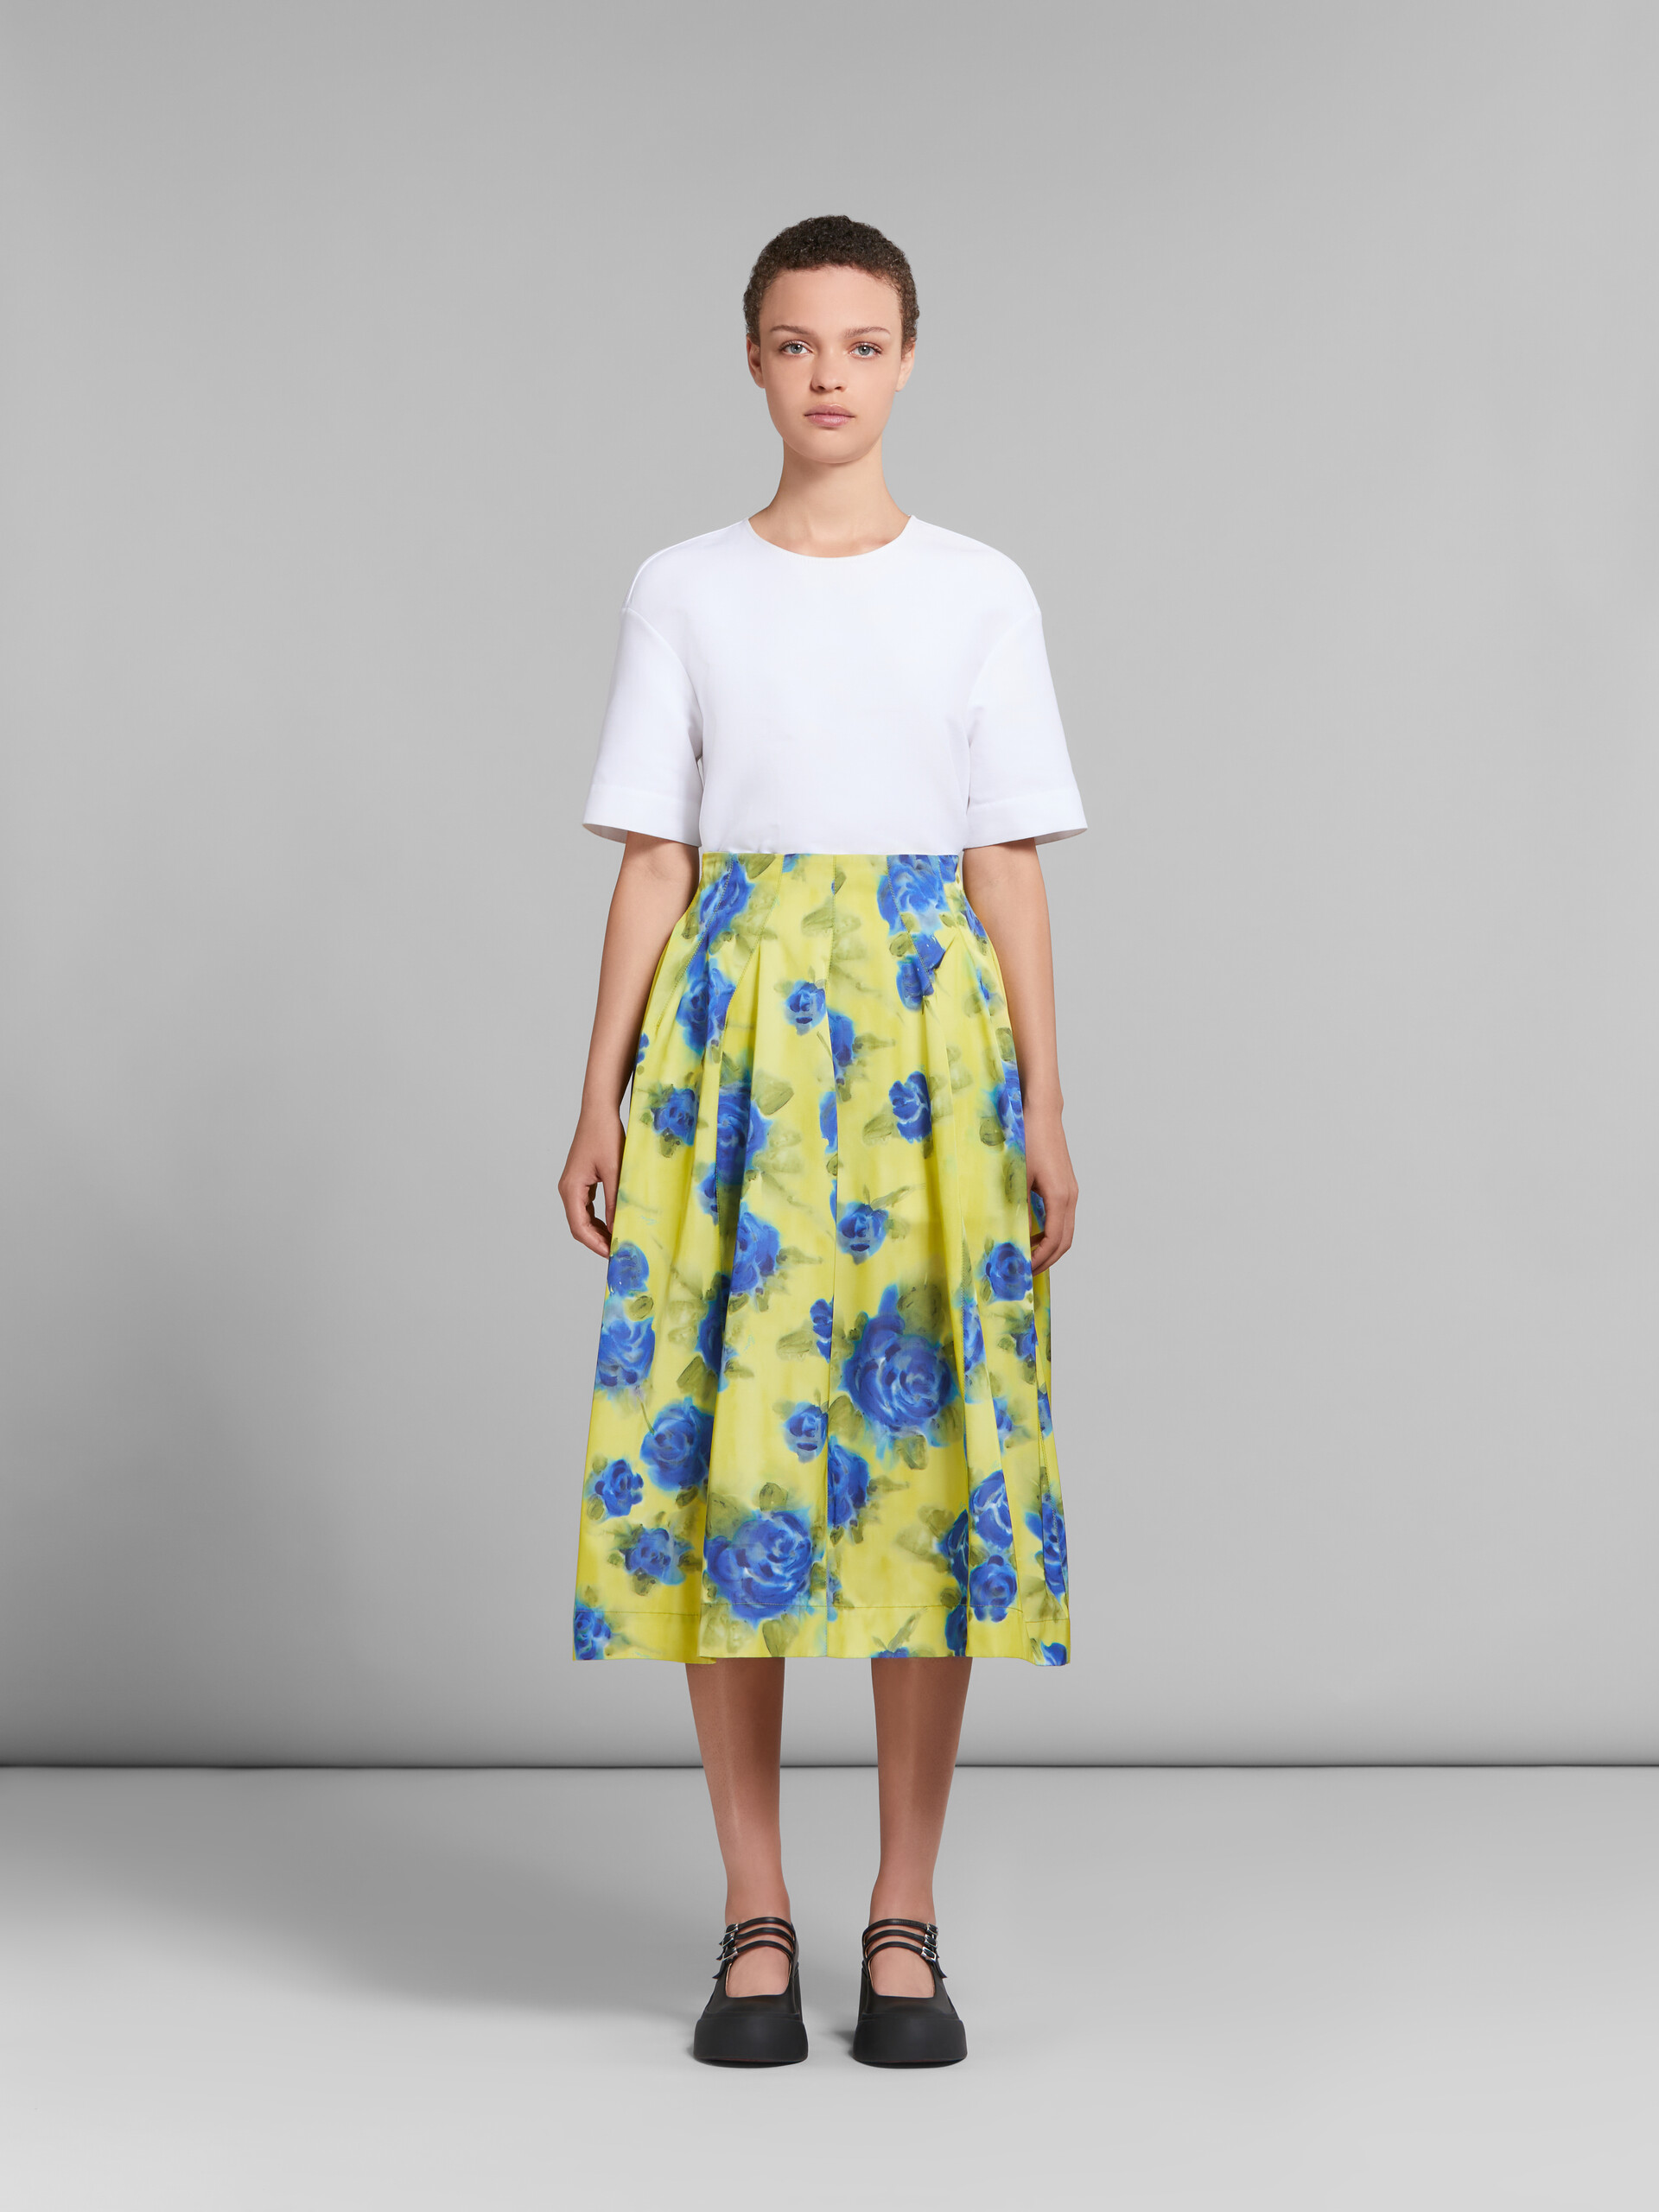 Yellow taffeta high-waisted skirt with Idyll print - Skirts - Image 2